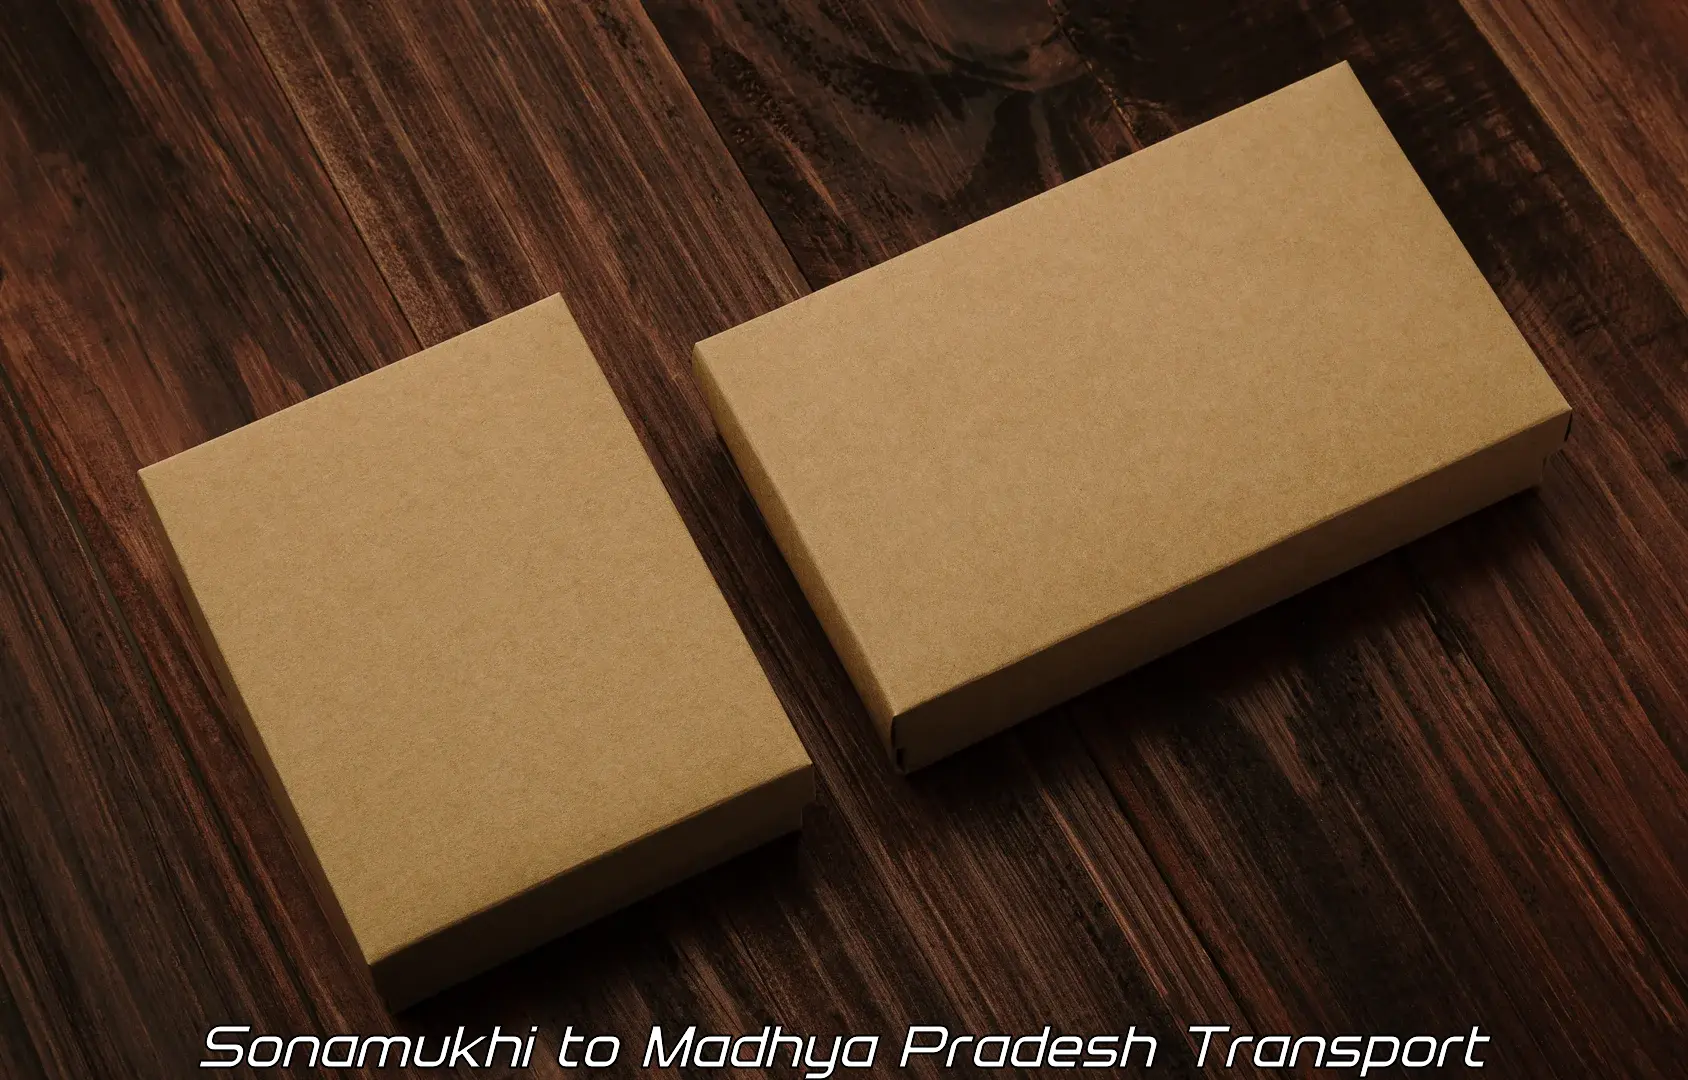 Nearby transport service Sonamukhi to Madhya Pradesh